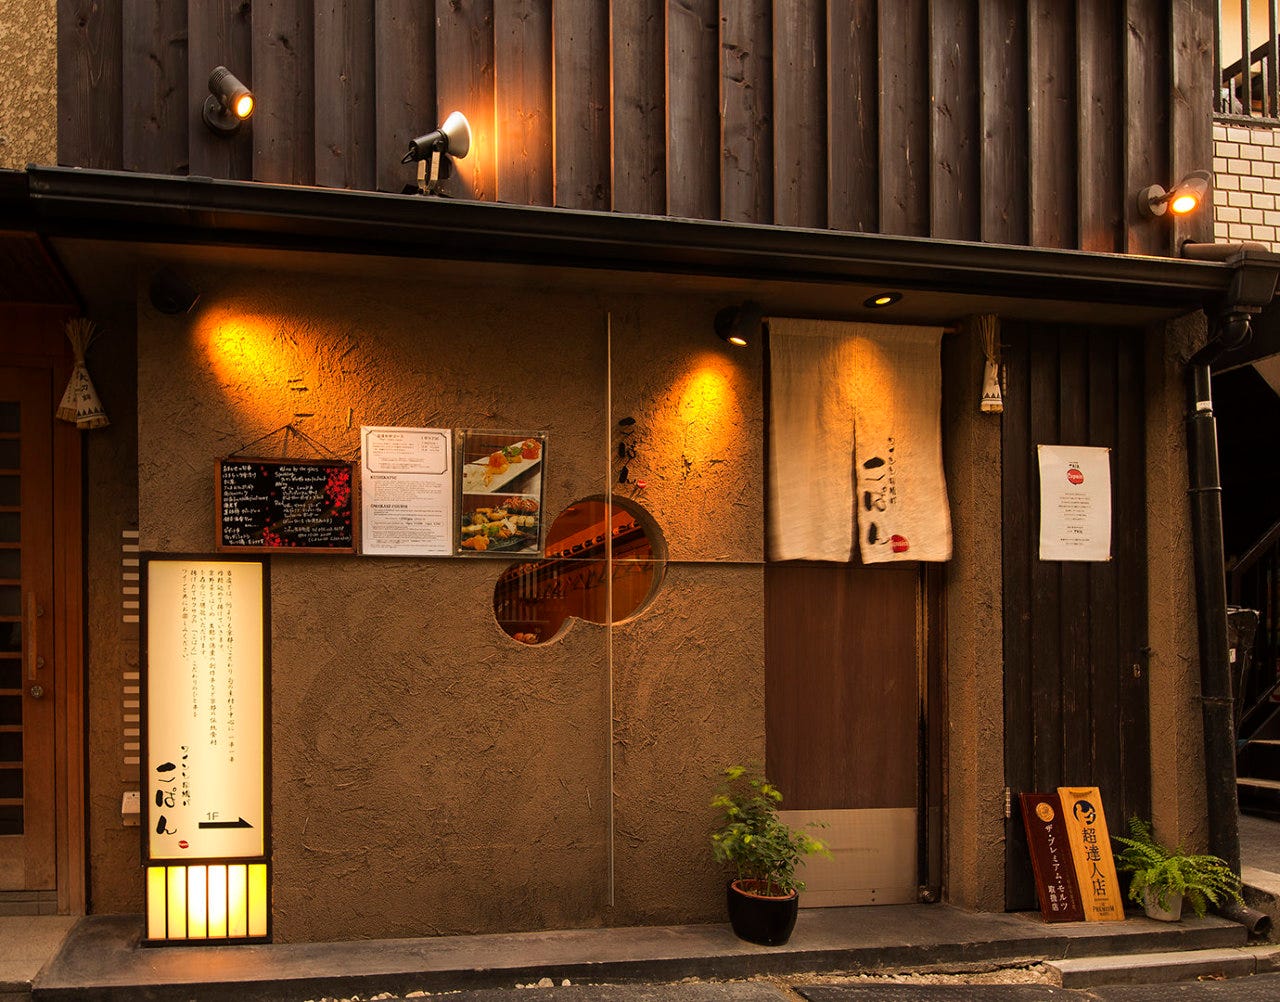 京都先斗町でほろり1杯…
心行くまでお愉しみくださいませ。